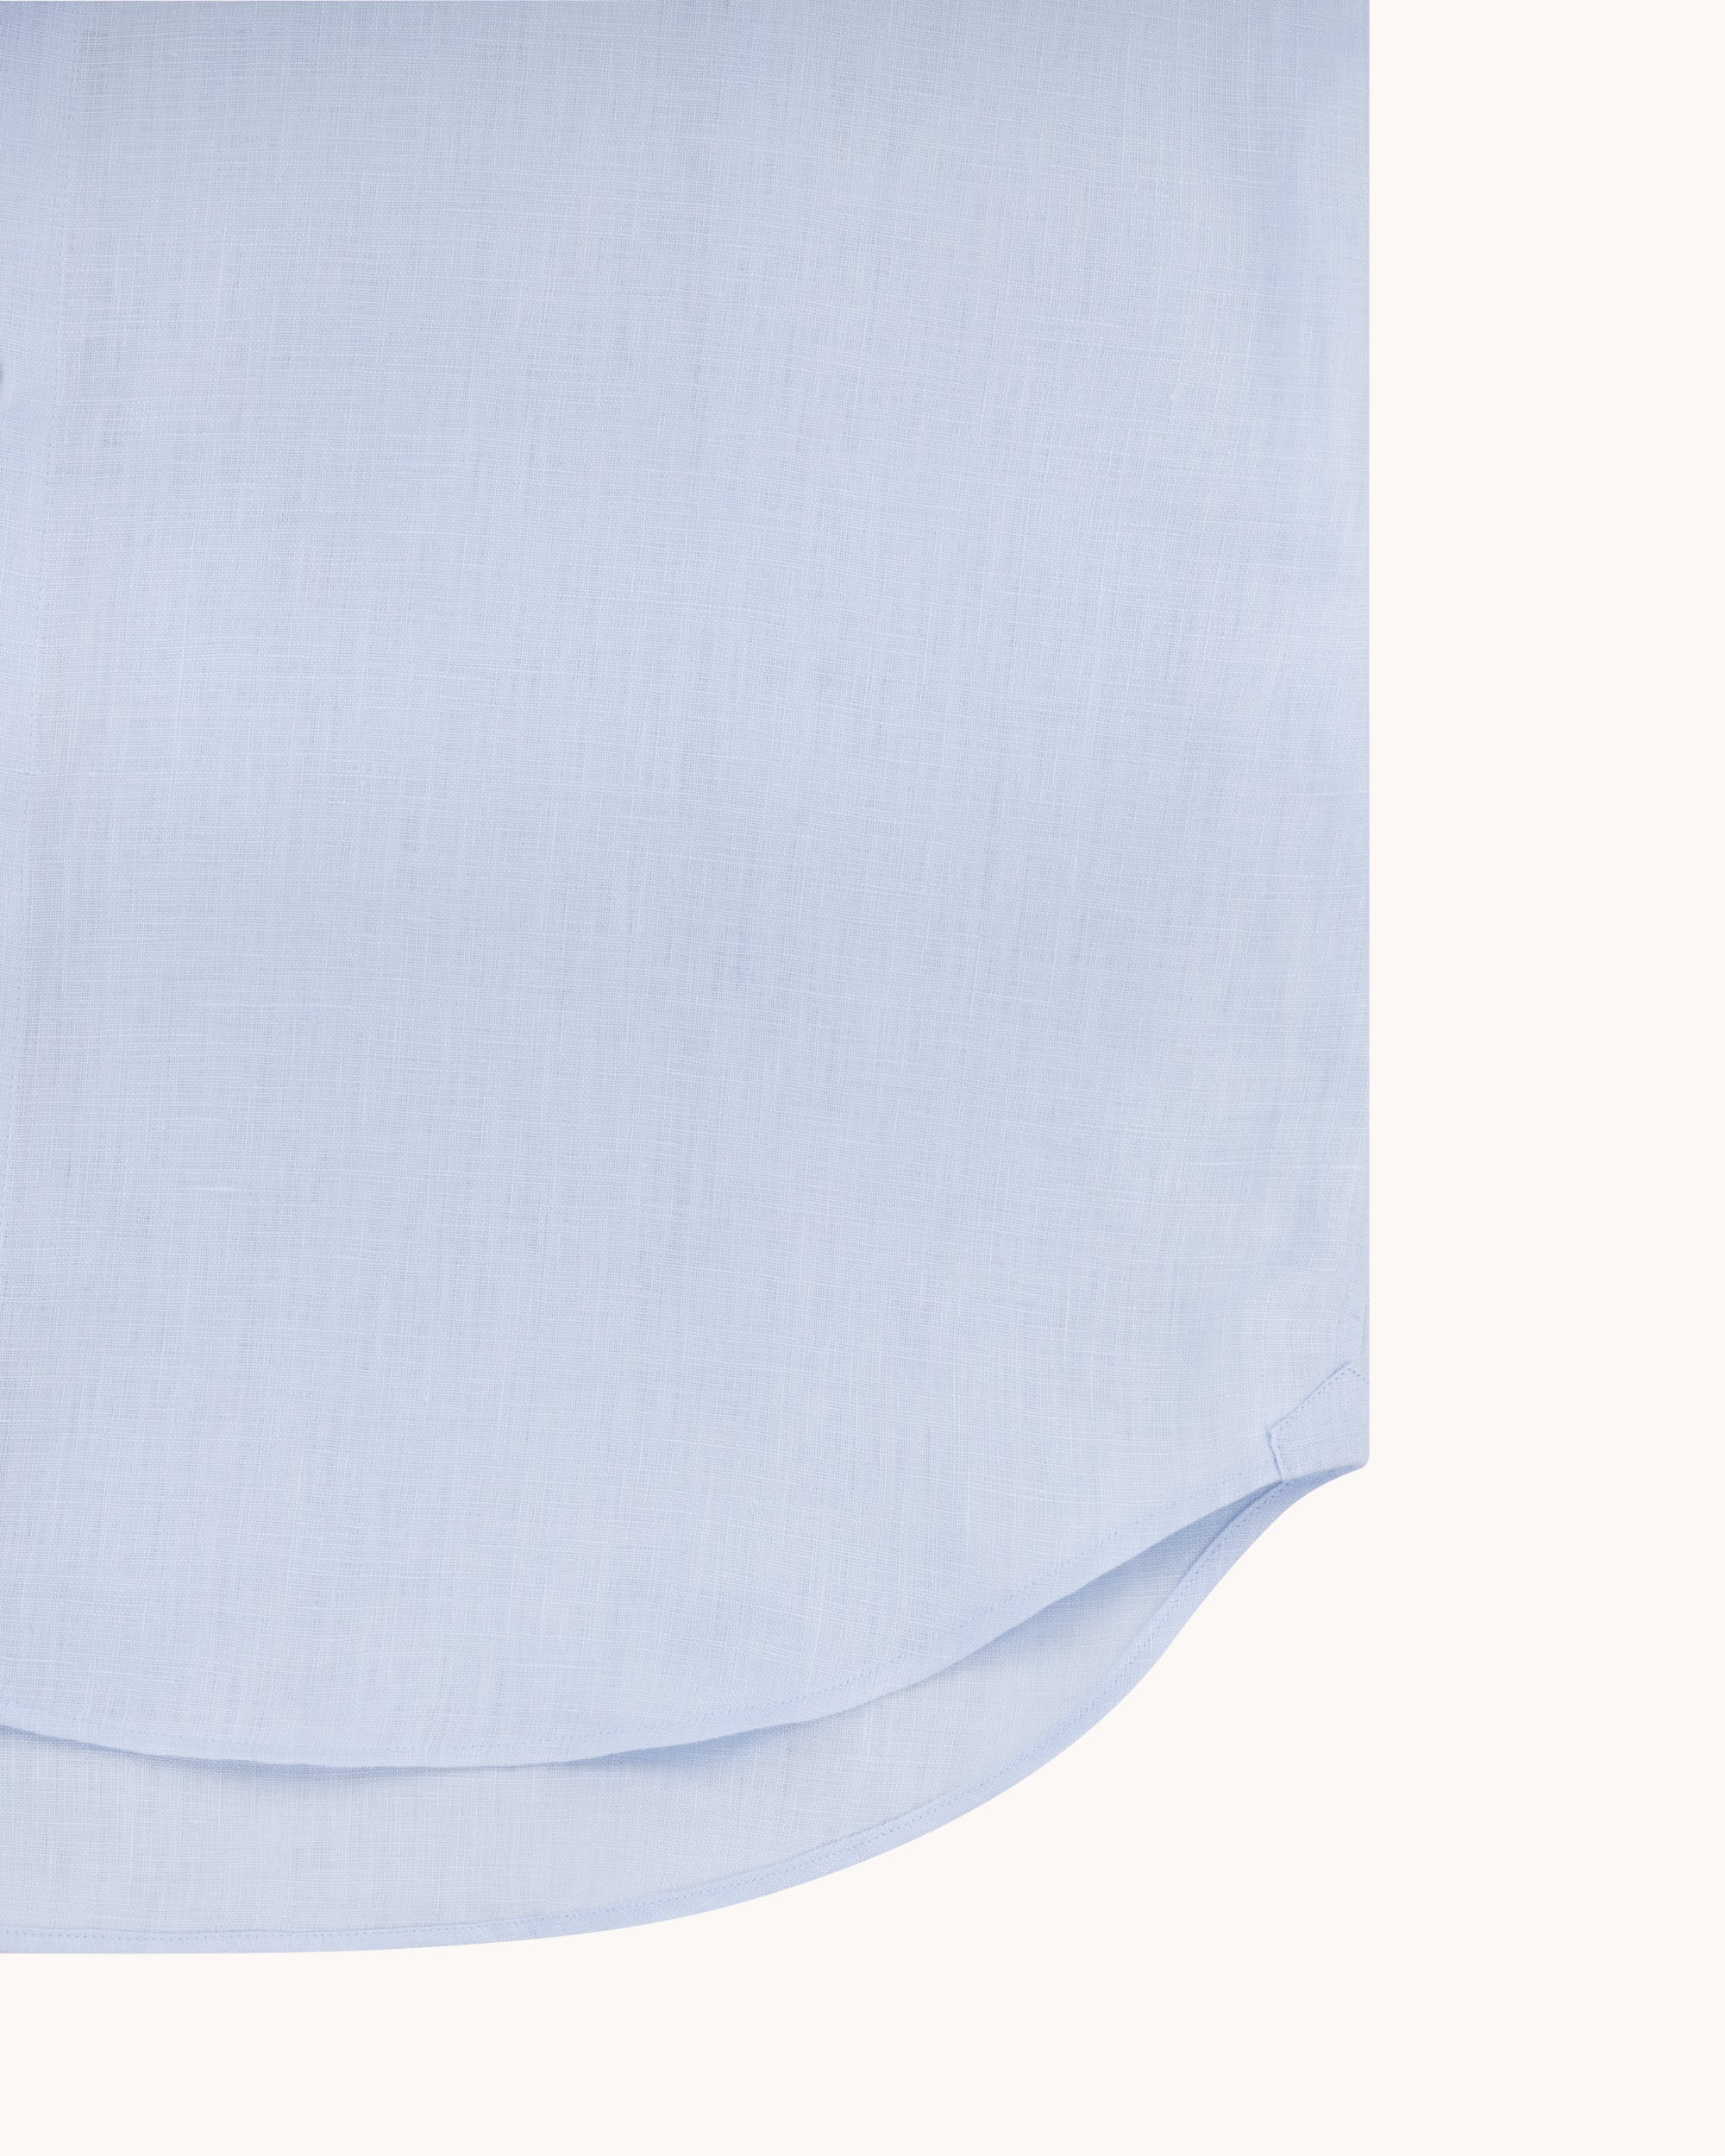 Spread Collar Shirt - Light Blue Linen